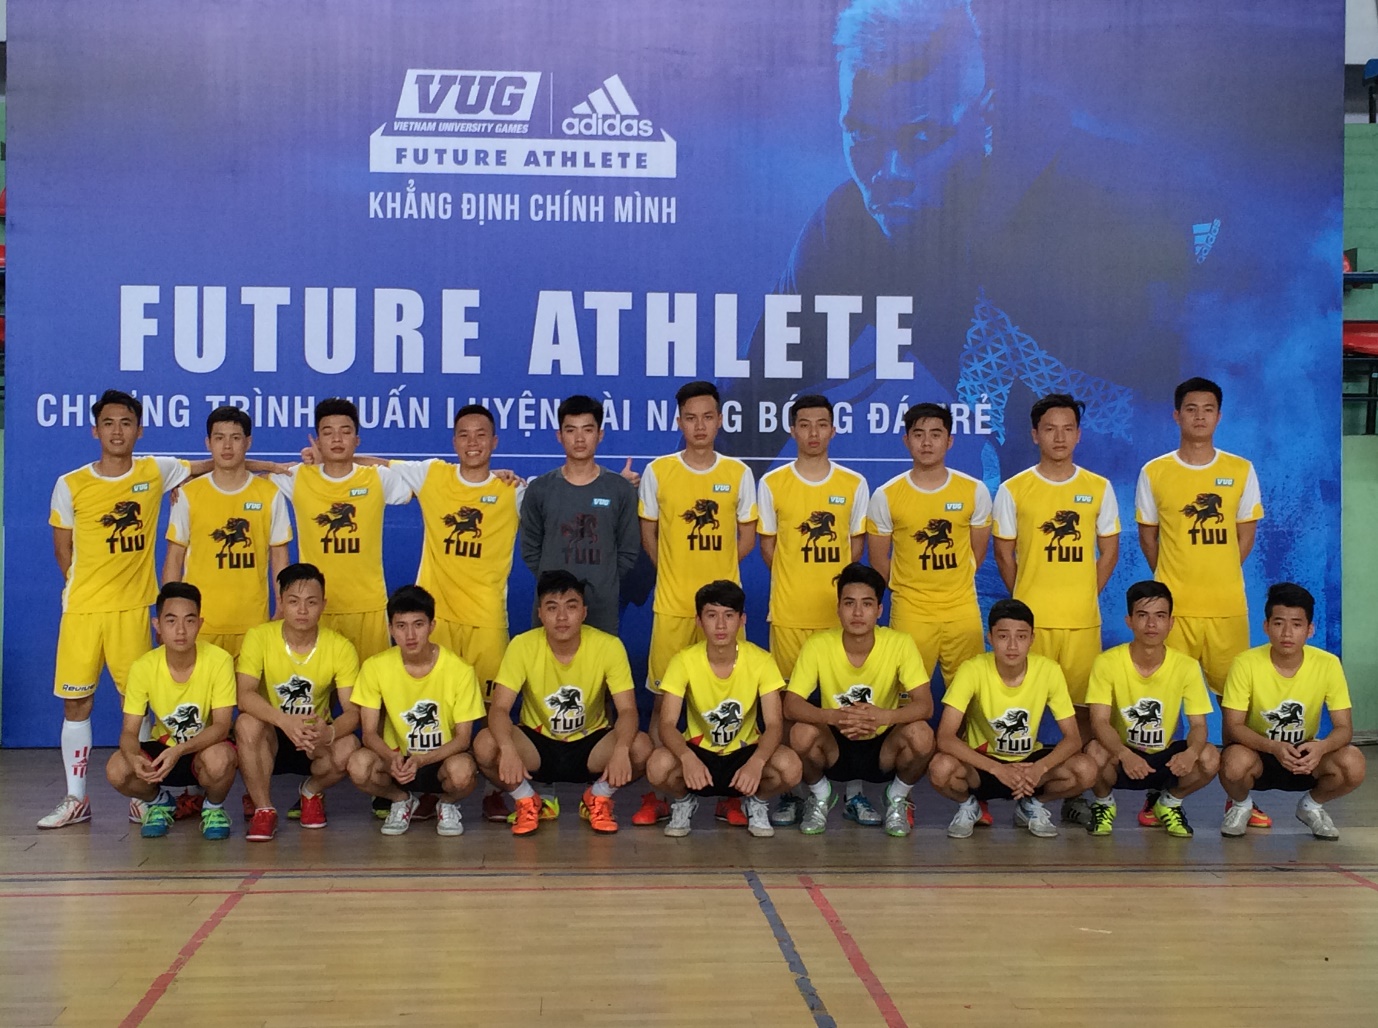 Giới trẻ hứng khởi với chương trình huấn luyện tài năng bóng đá trẻ Future Athlete - Ảnh 1.